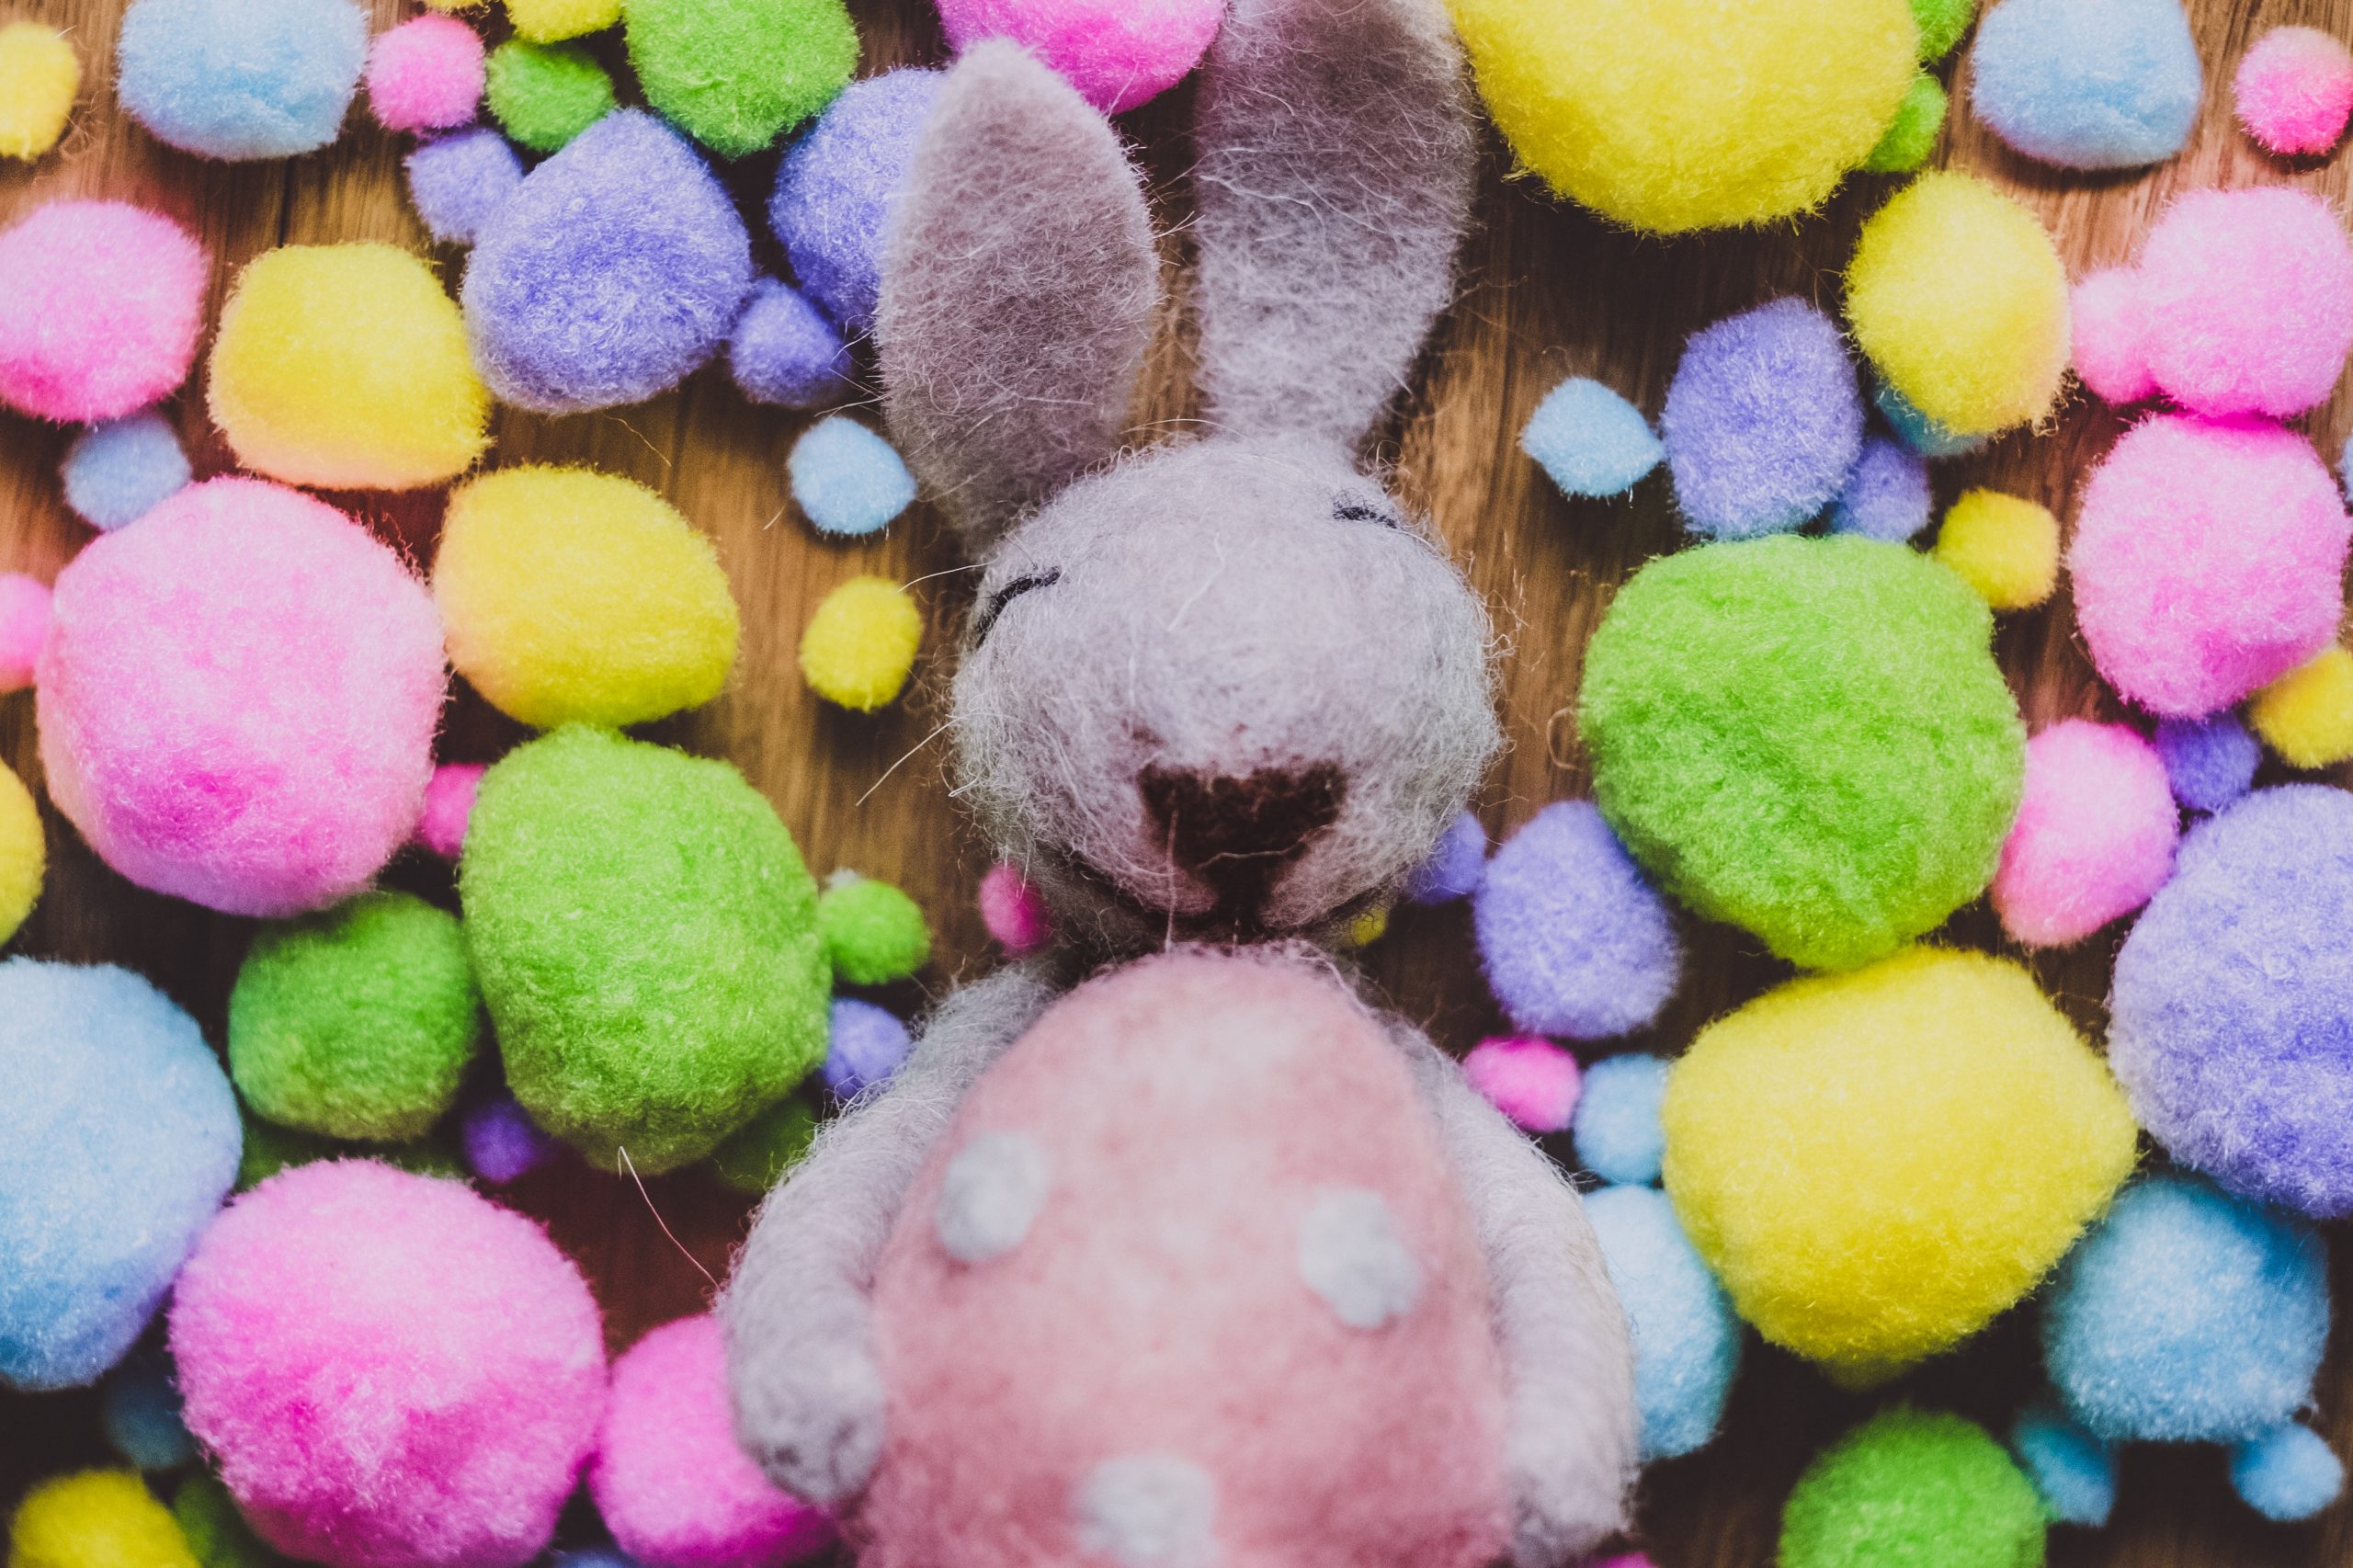 Légendes de Pâques : pourquoi des oeufs, des cloches et lapin de Pâques